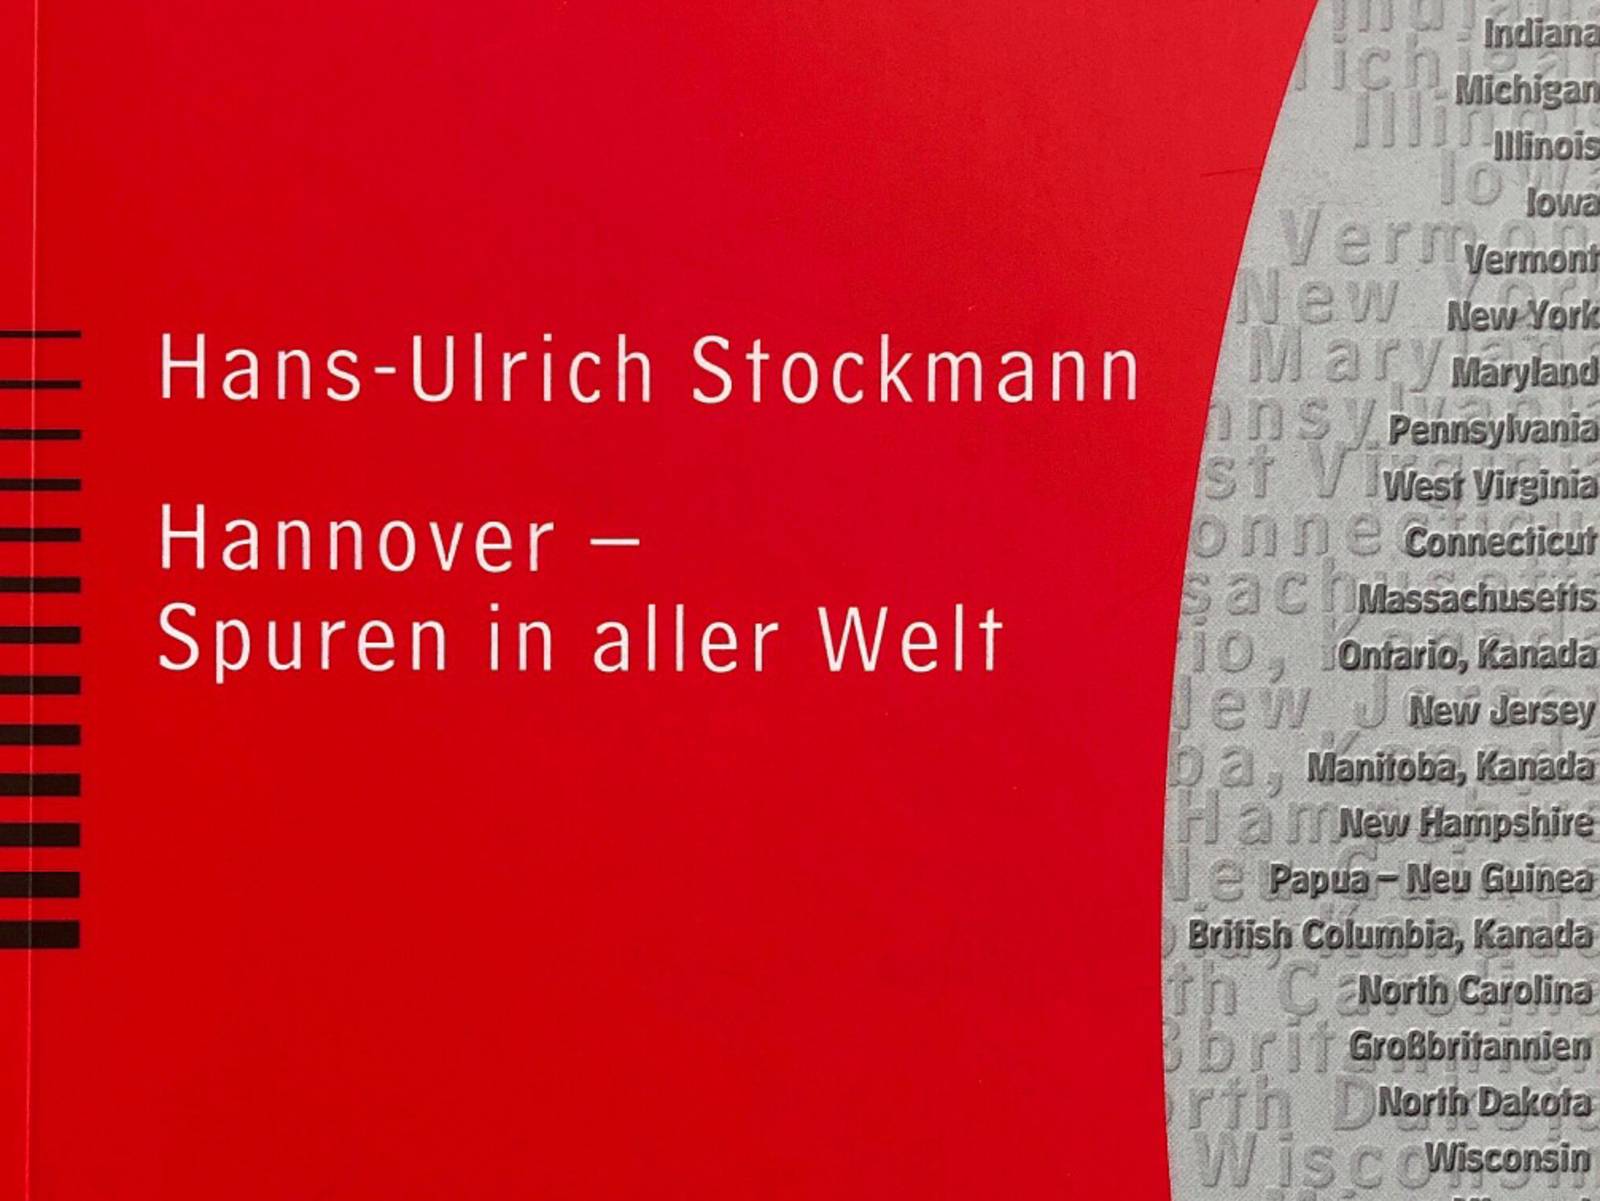 Hans-Ulrich Stockmann, Hannover - Spuren in aller Welt, Titelseite der Hannoverschen Geschichtsblätter55/2002, Beiheft 2